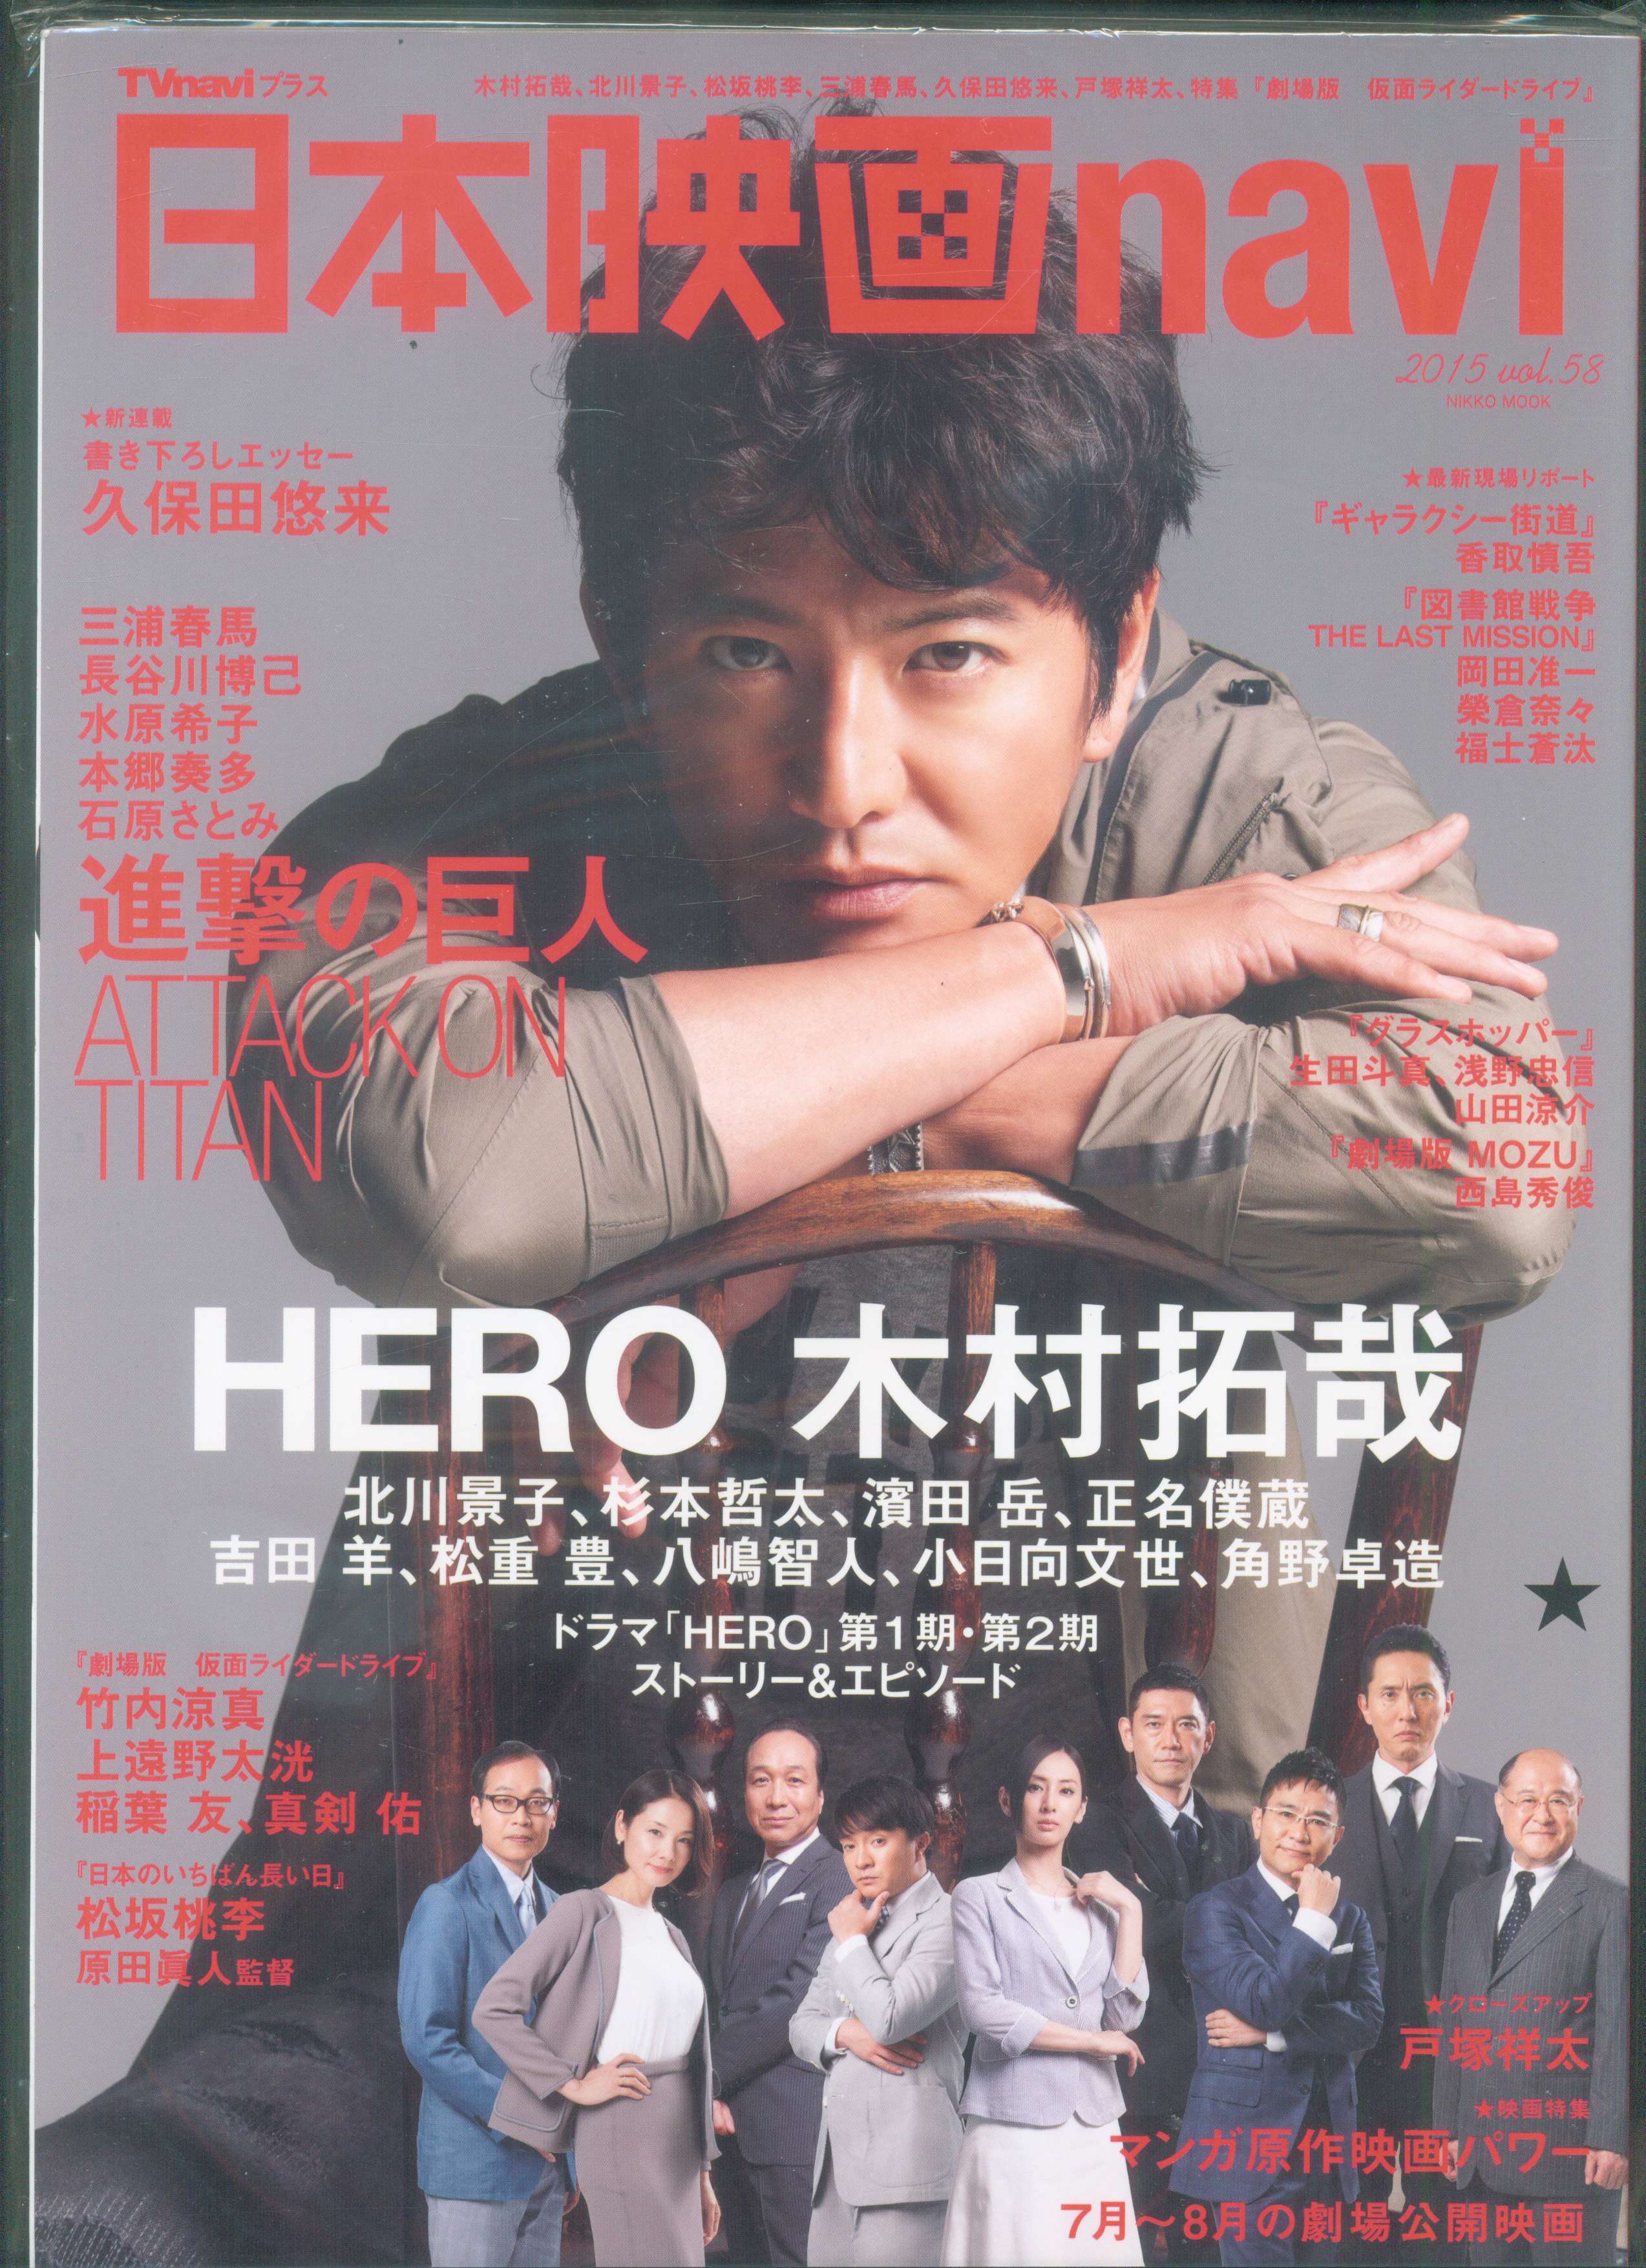 配信元 日本映画heroes vol.4 (三浦春馬美しきヒーローたち『星の大地